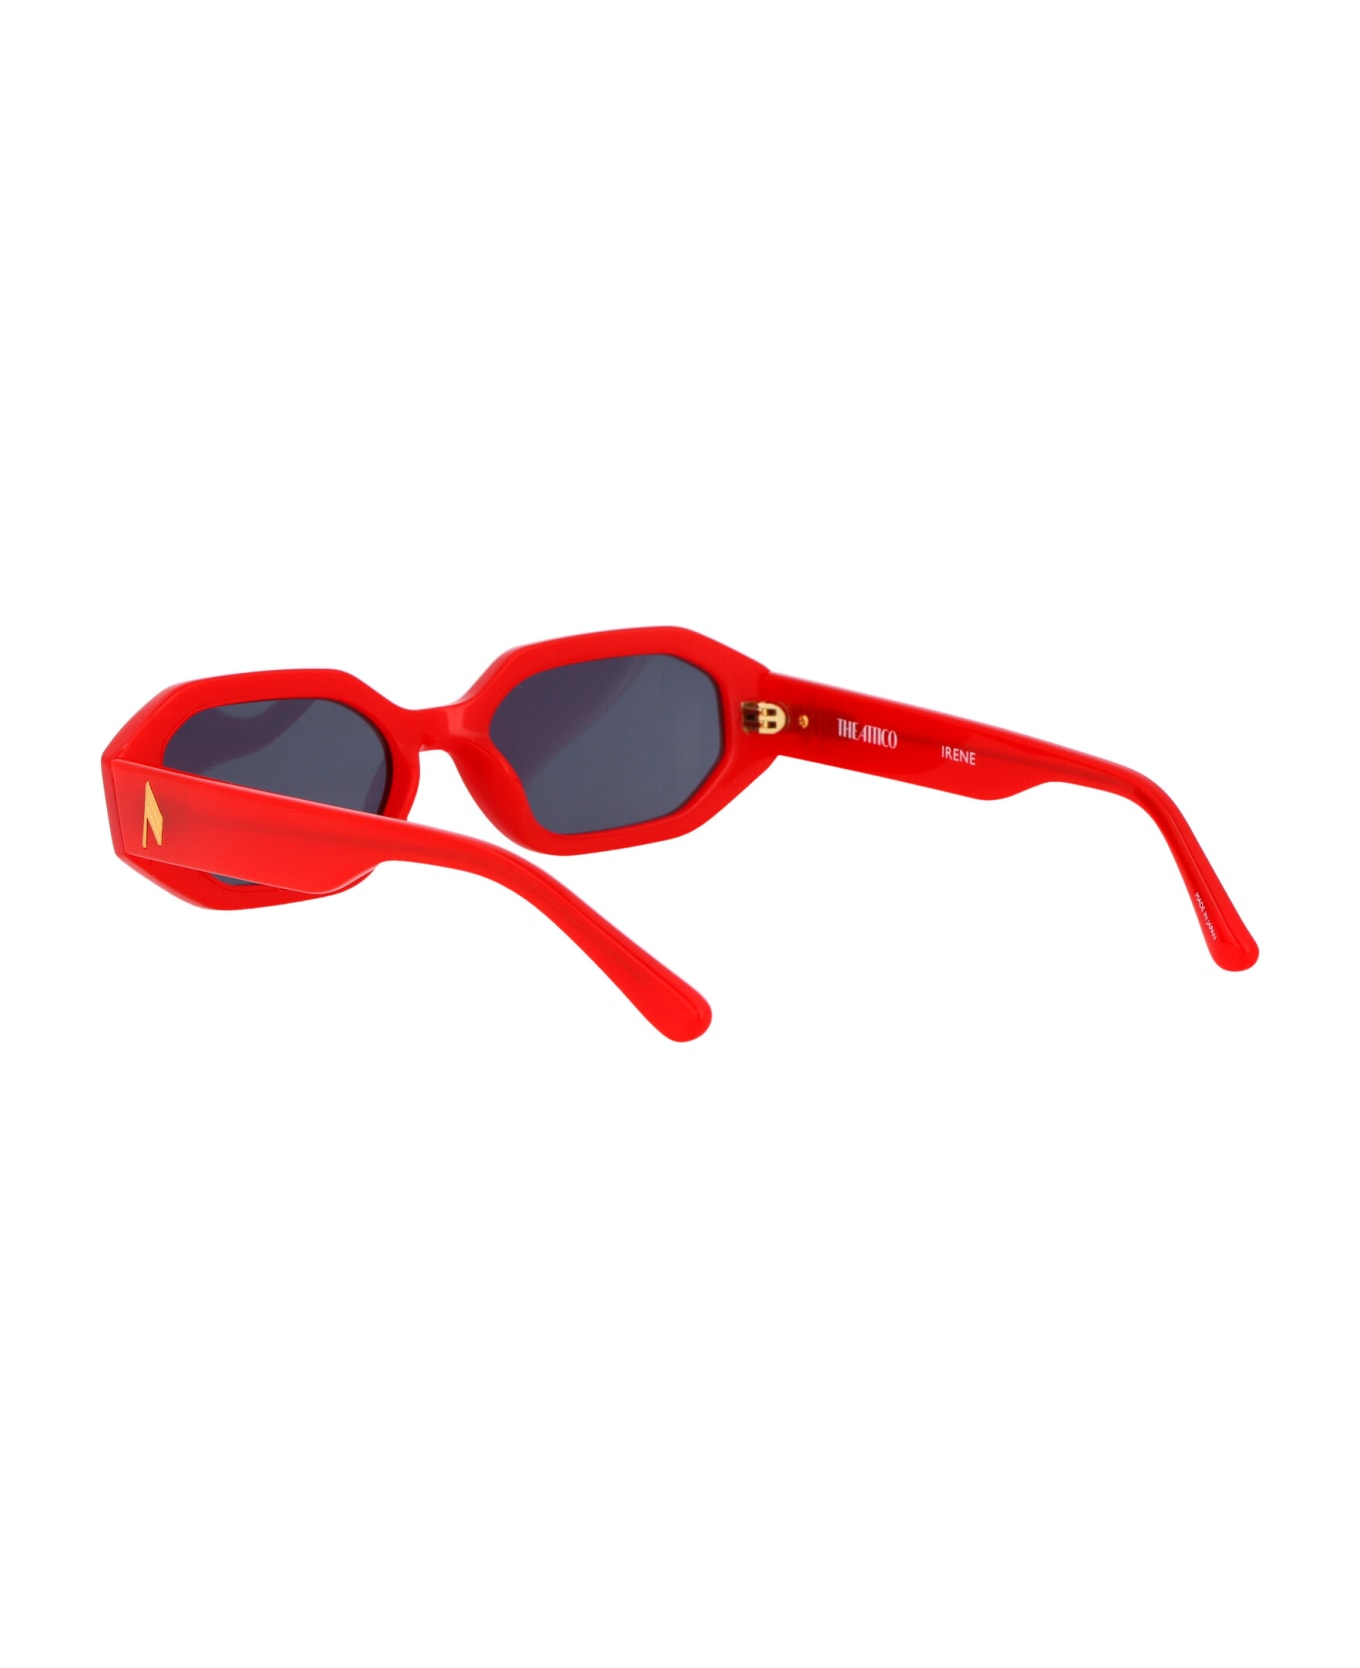 The Attico Irene Sunglasses - super by retrosuperfuture 1968 sunglasses igkr